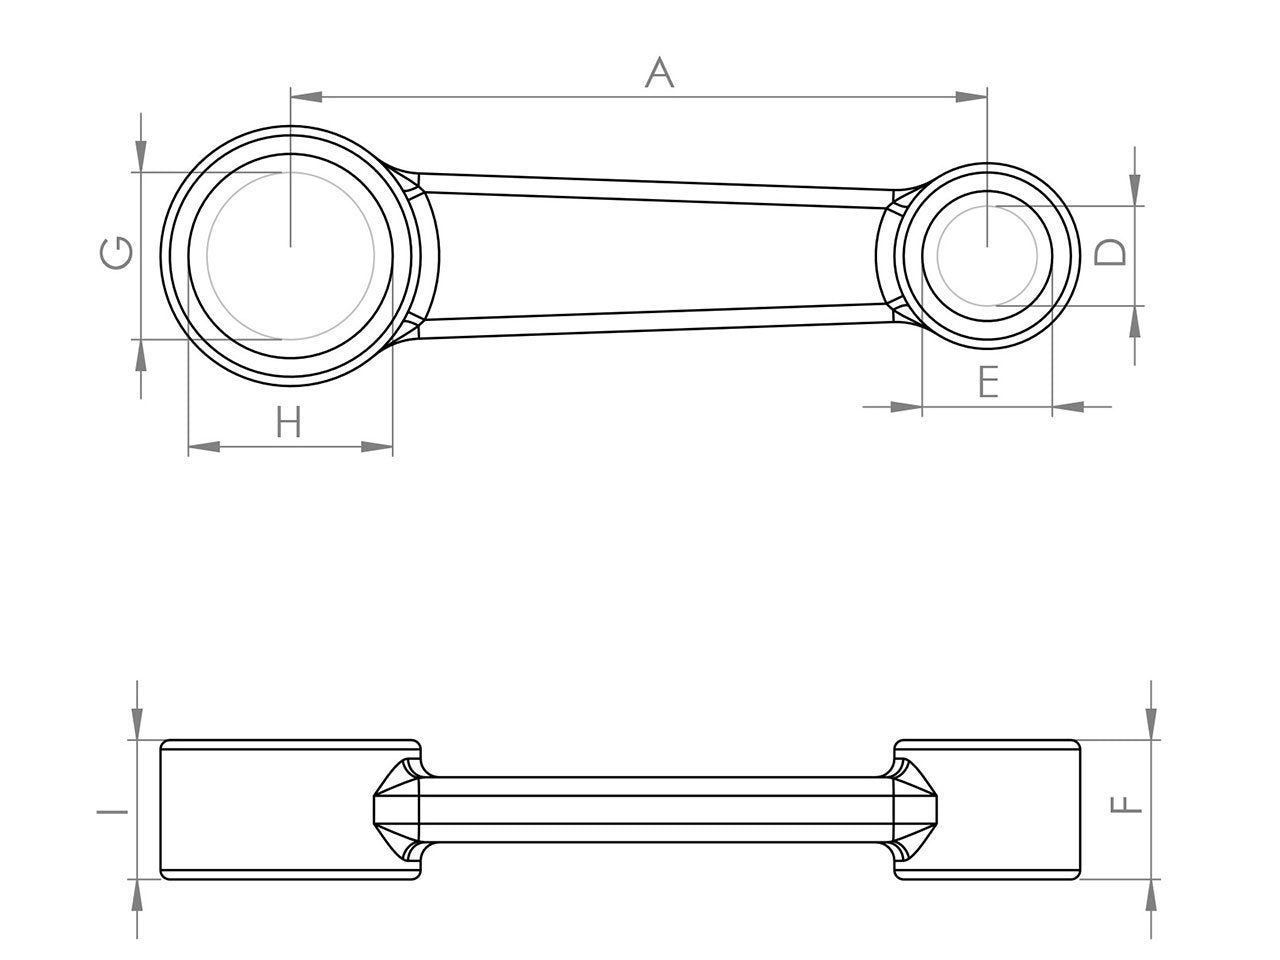 Zeichnung Barikit Pleuel für einen Suzuki RM 85 Moped Motor mit Bemaßung.